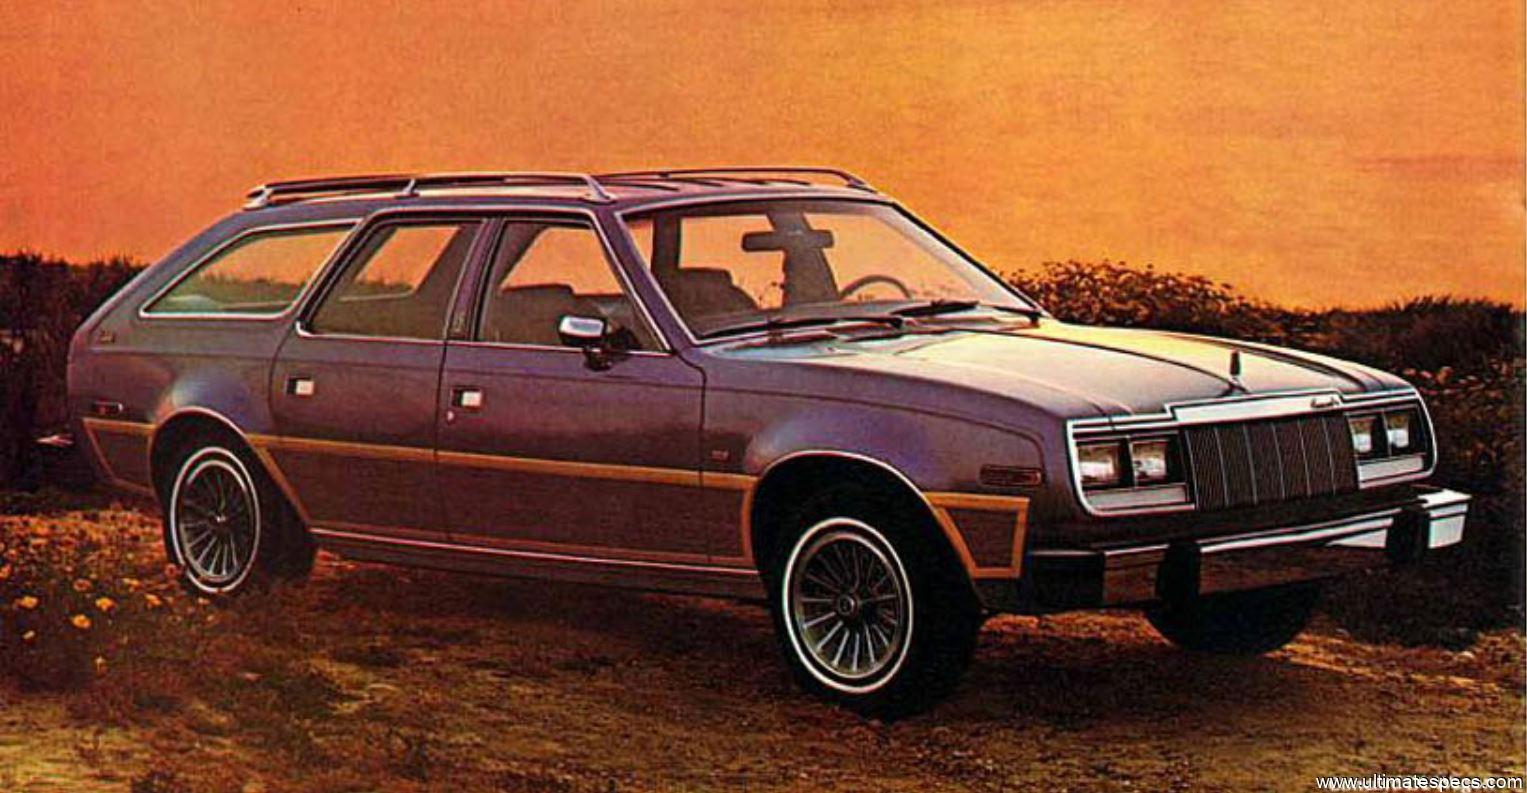 AMC Concord Wagon 1979